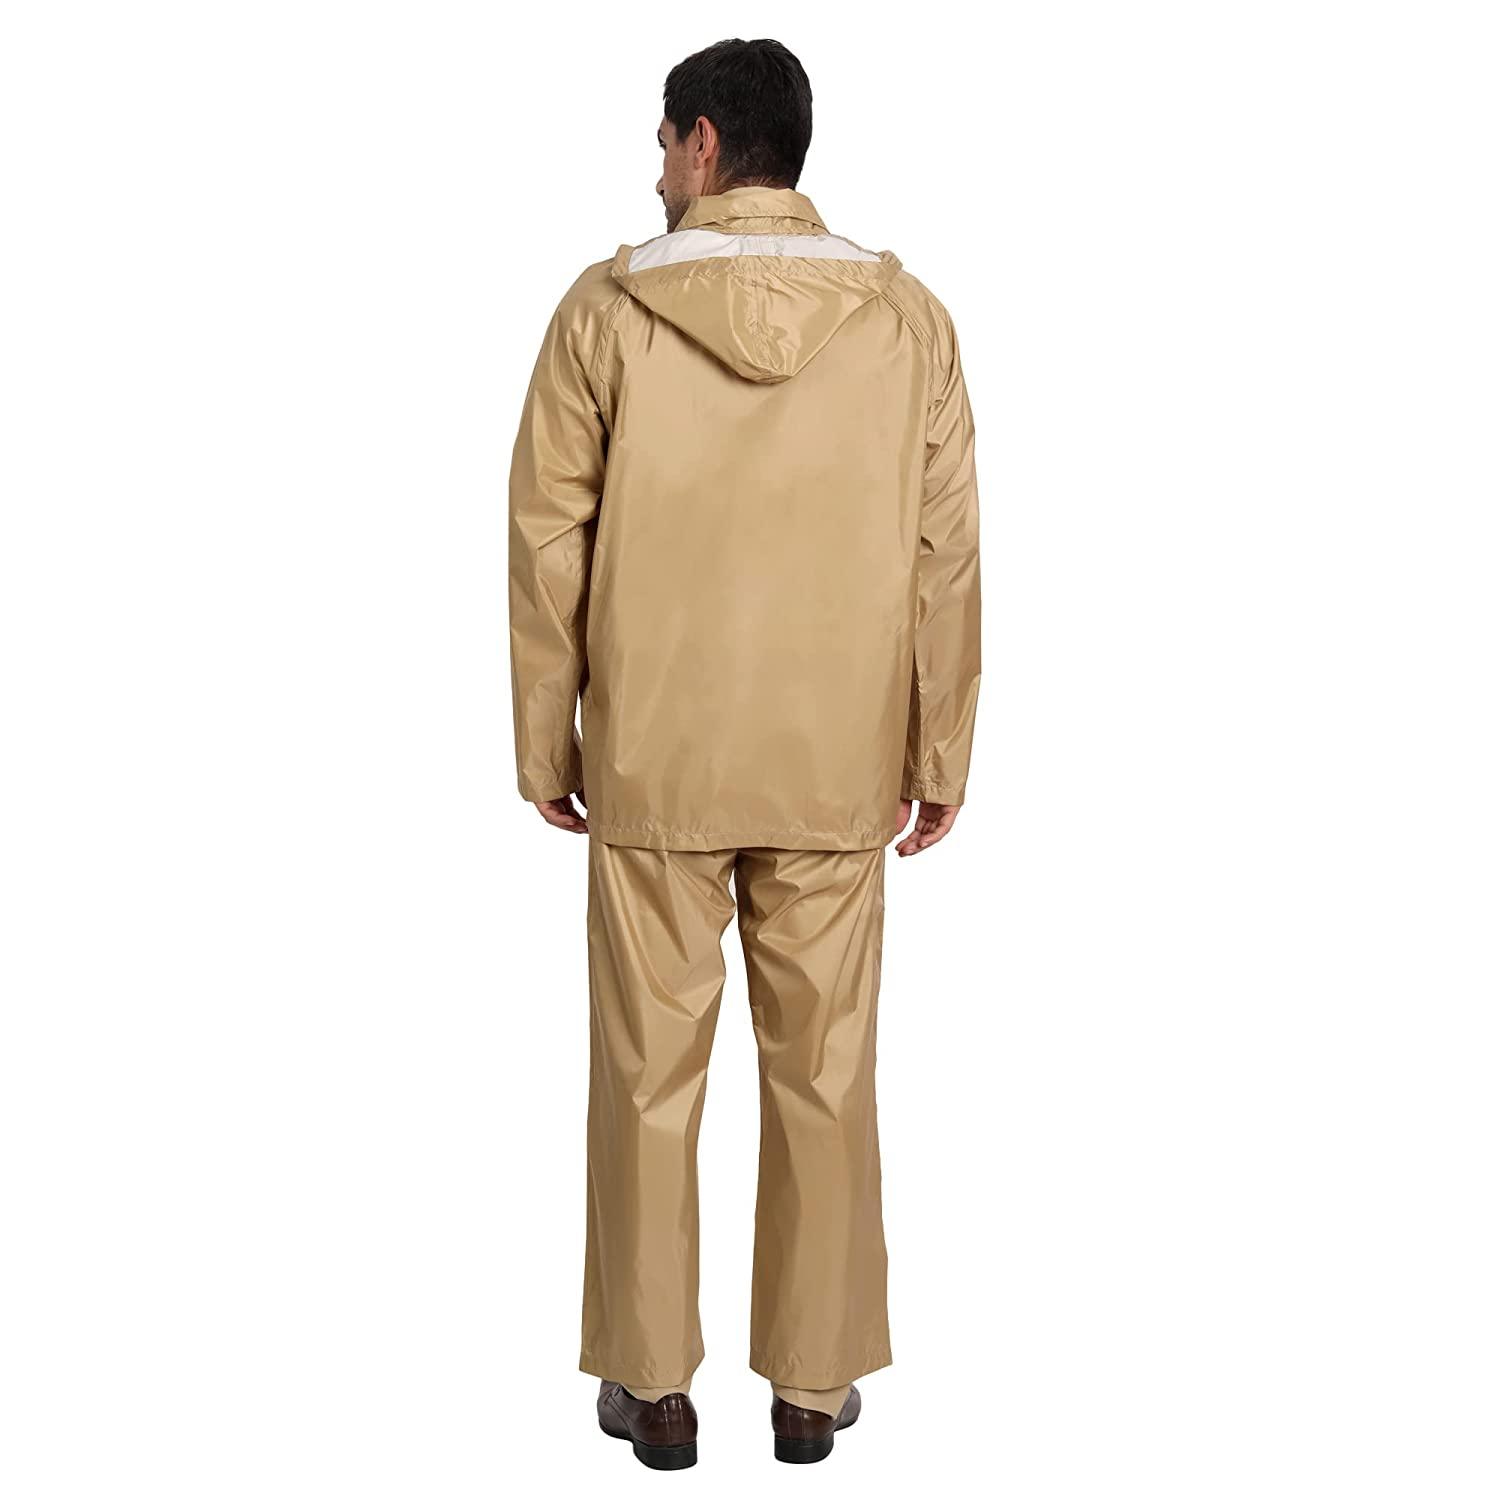 Black Pant Rain Coat Rain Suit at Rs 599 in Salem | ID: 24154097030